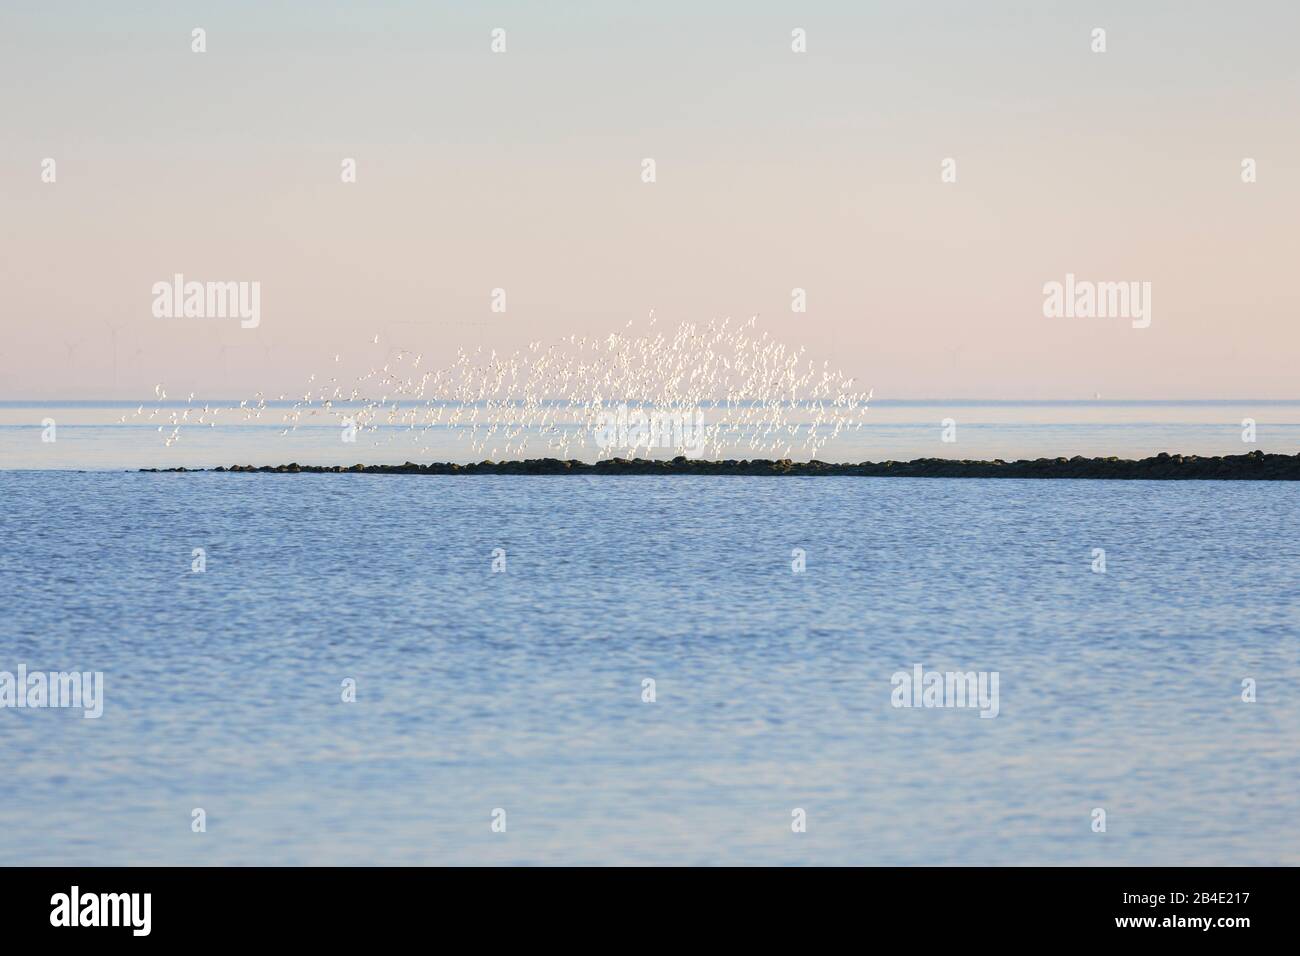 Europa, Alemania, Baja Sajonia, Otterndorf, una bandada de invierno Sanderlinge (Calidris alba) en el vuelo de la mañana sobre el estuario del Elba, Aquí las aves muestran el plumaje blanco de su lado ventral, Foto de stock